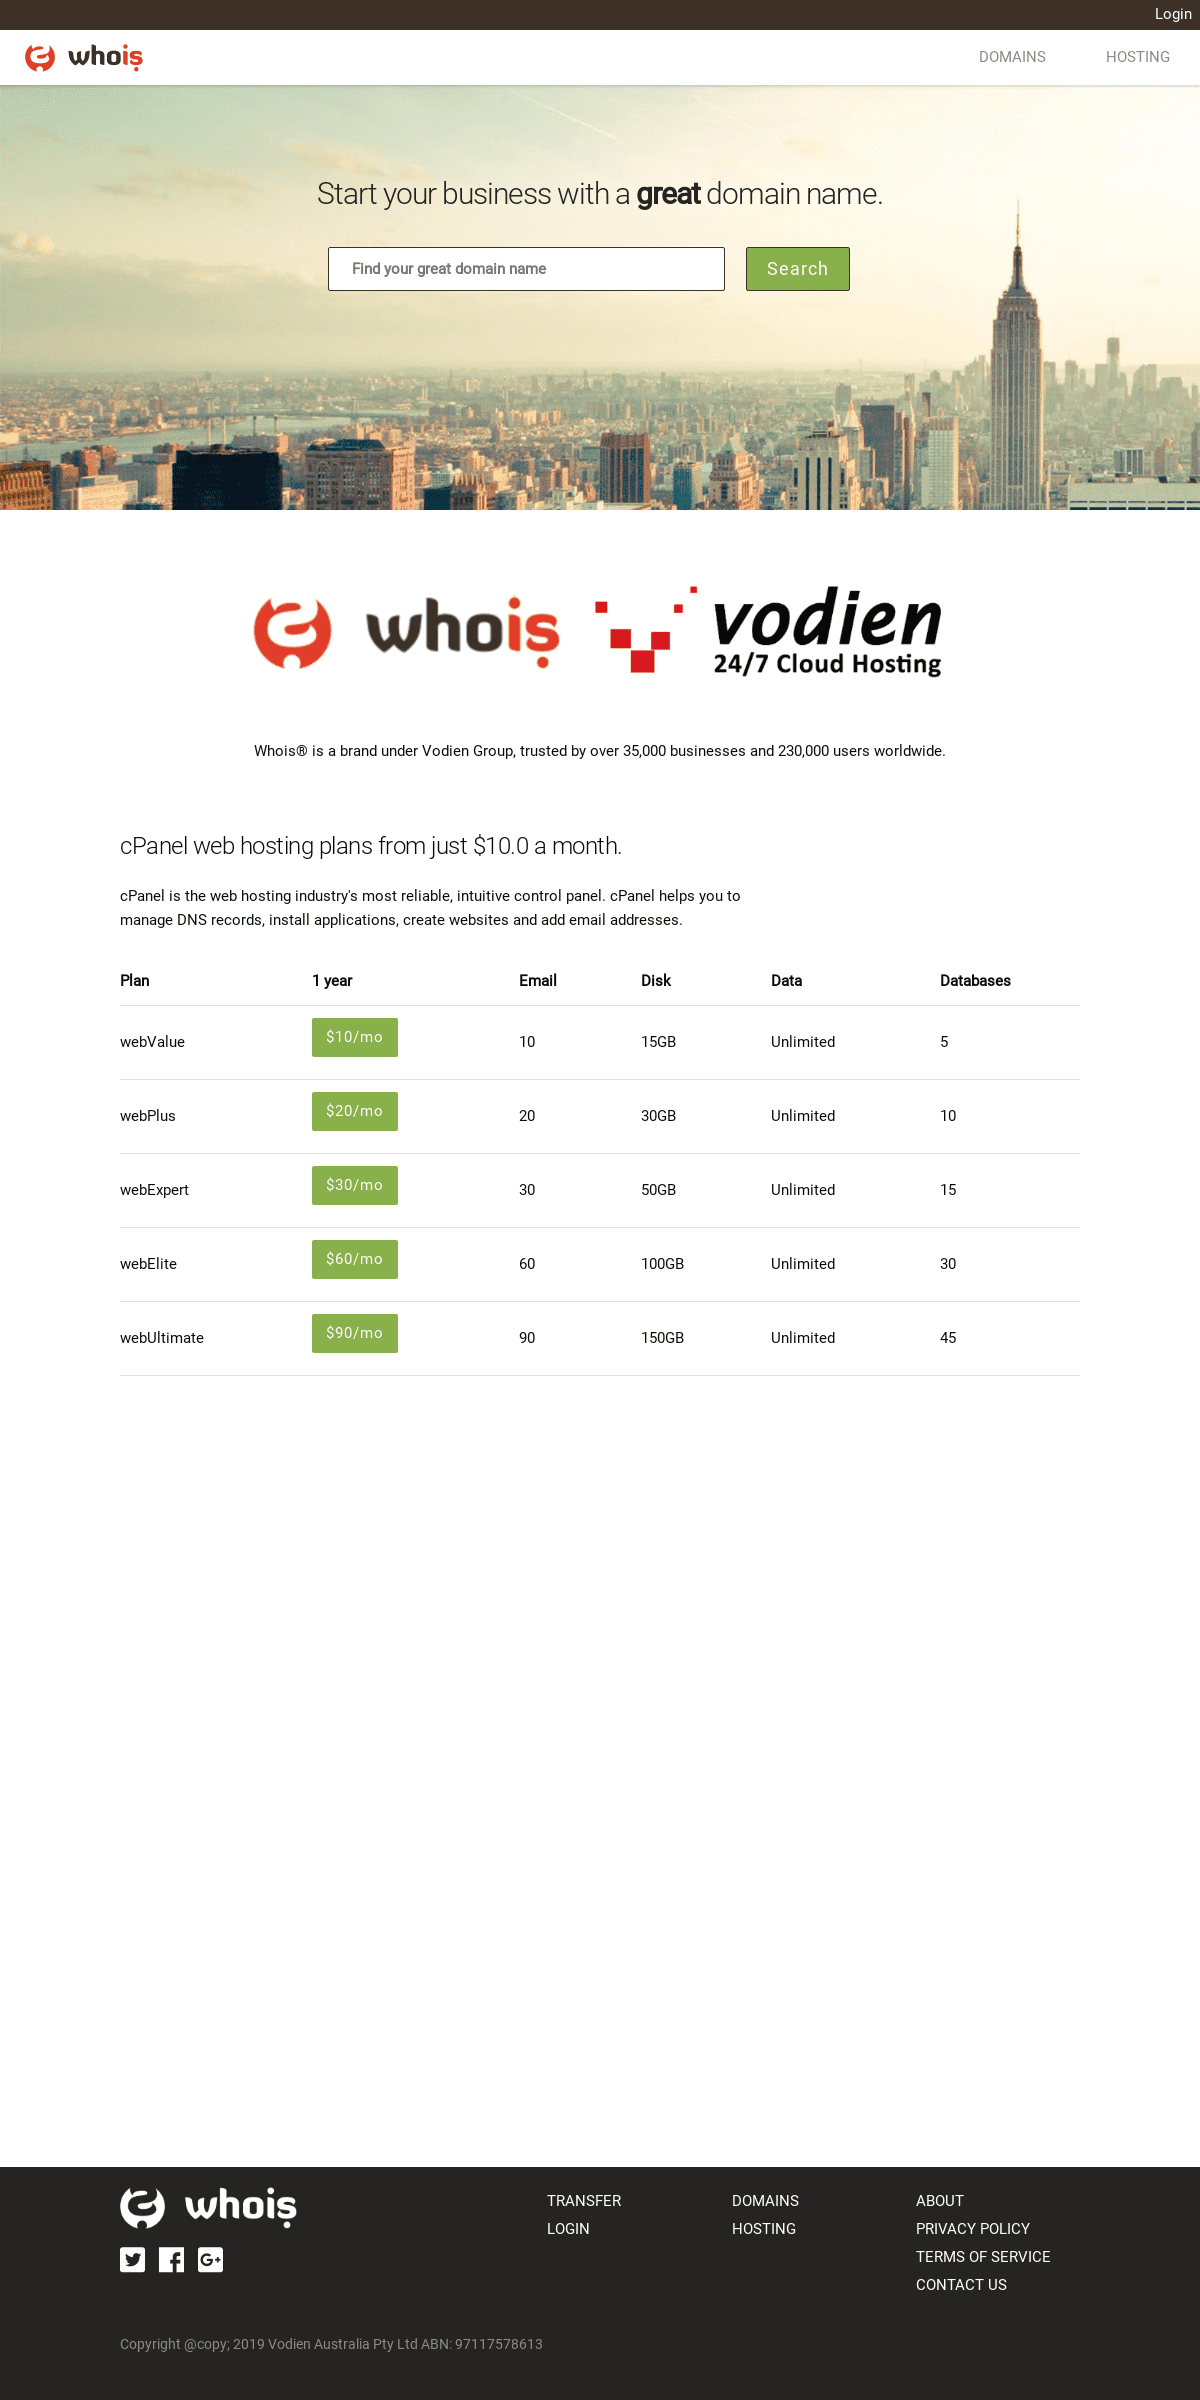 A complete backup of whois.com.au